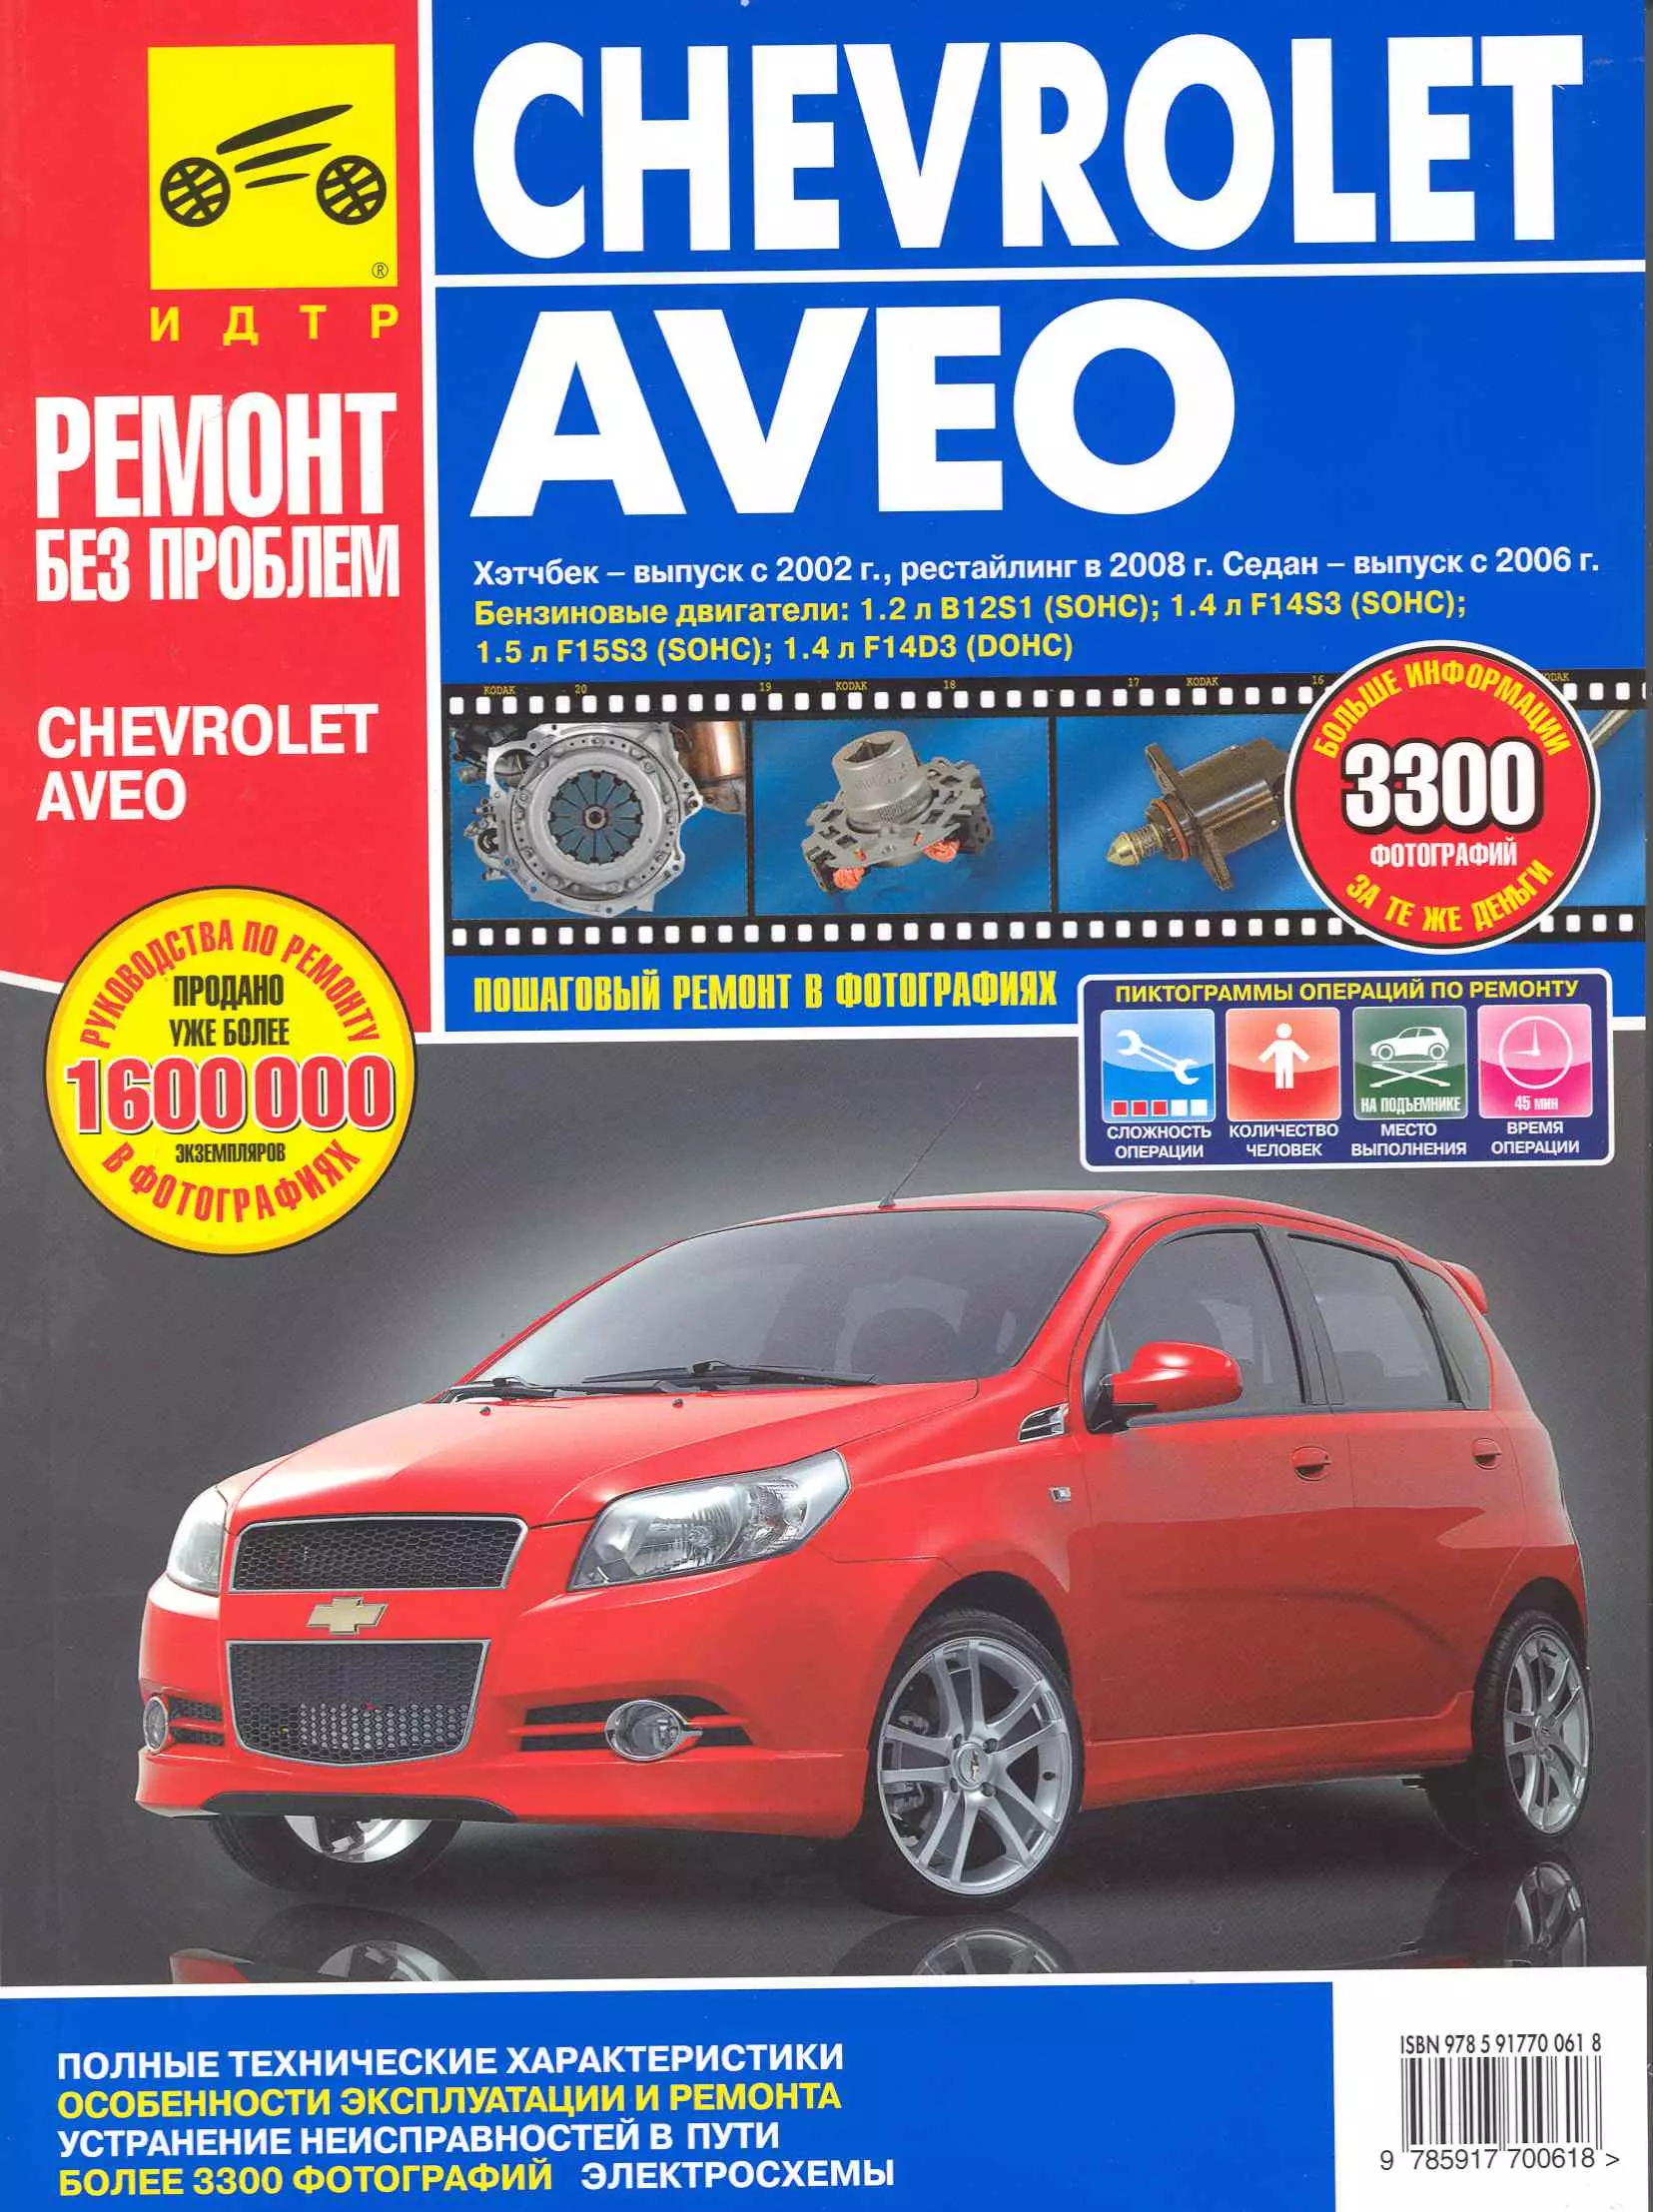 Погребной С. Н. - Chevrolet Aveo. Руководство по эксплуатации, техническому обслуживанию и ремонту./ Хэтчбек-выпуск с 2002 г., рестайлинг в 2008 г., Седан-выпуск с 2006